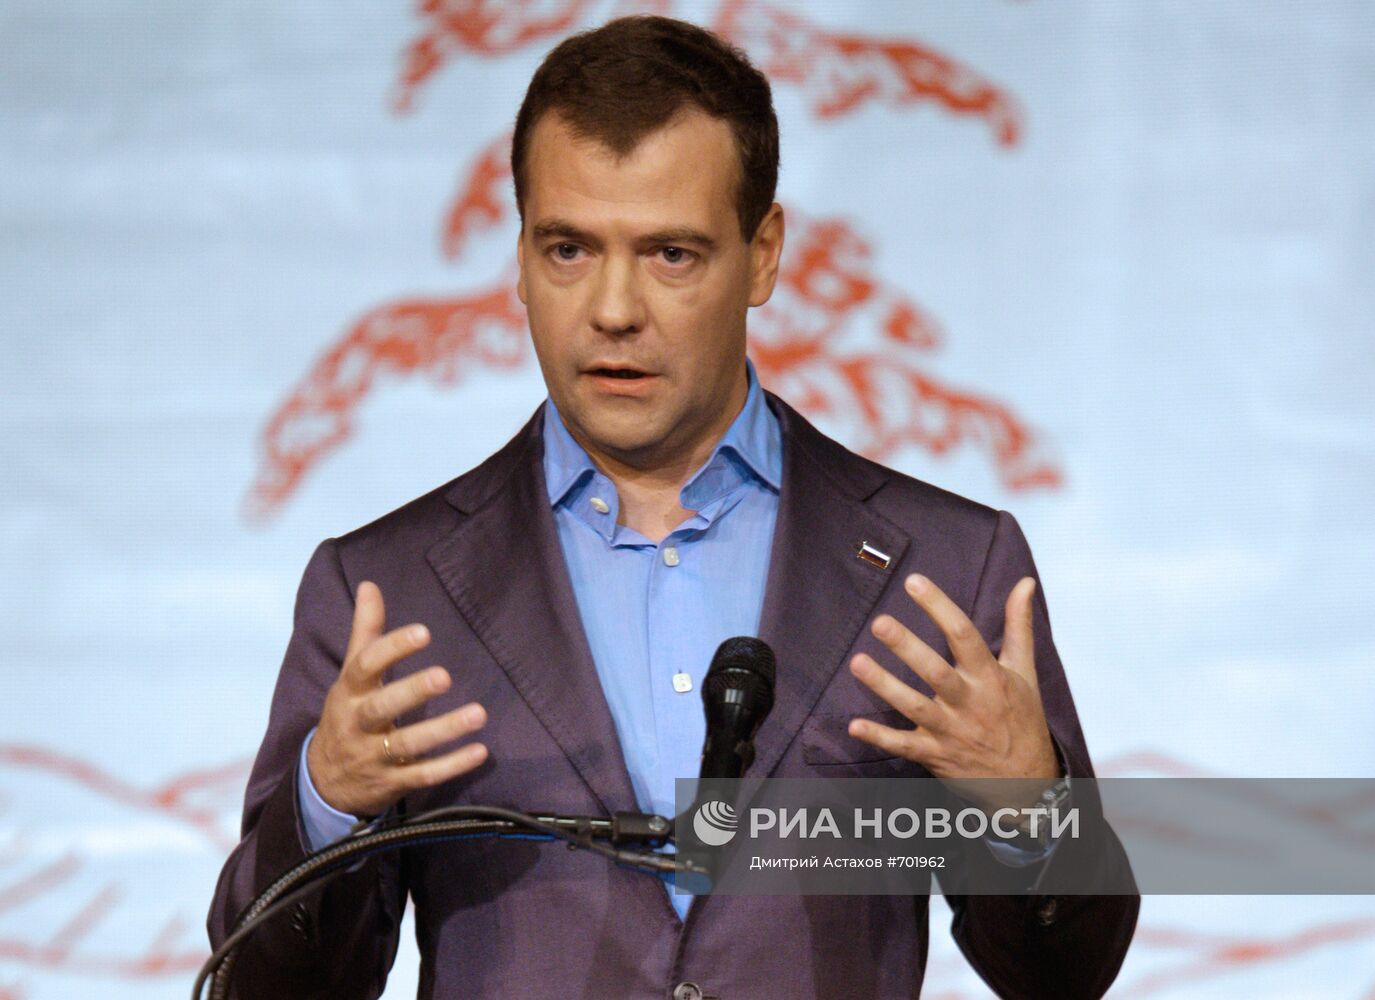 Рабочий визит Дмитрия Медведева в США. 2-й день